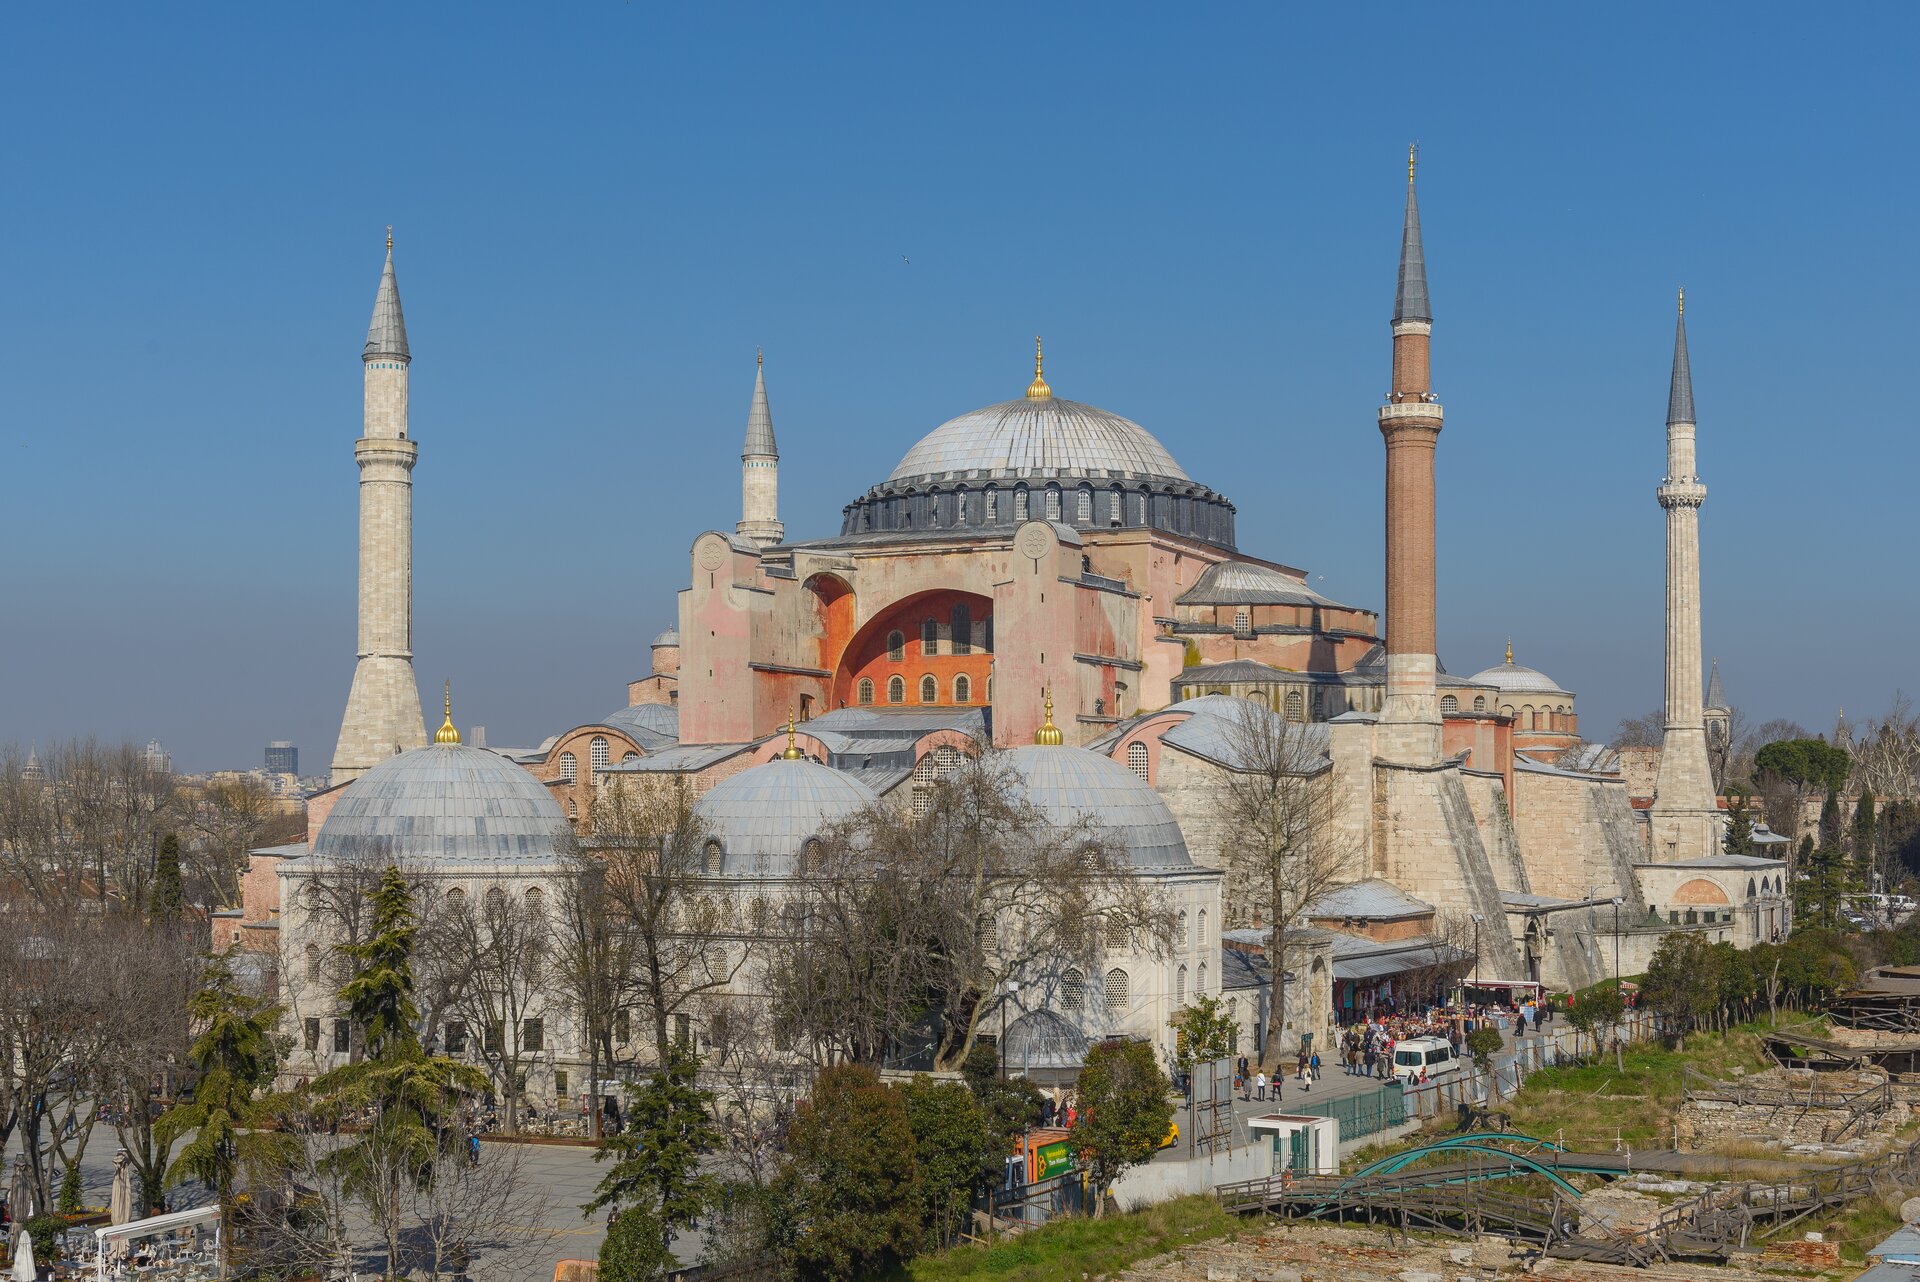 Współczesne zdjęcie meczetu Hagia Sofia. Centralny budynek przykryty kopułą otoczony jest mniejszymi zabudowaniami również mającymi dachy w formie kopuł, a wokół tego stoją cztery okrągłe, ostro zakończone wieże minaretów.